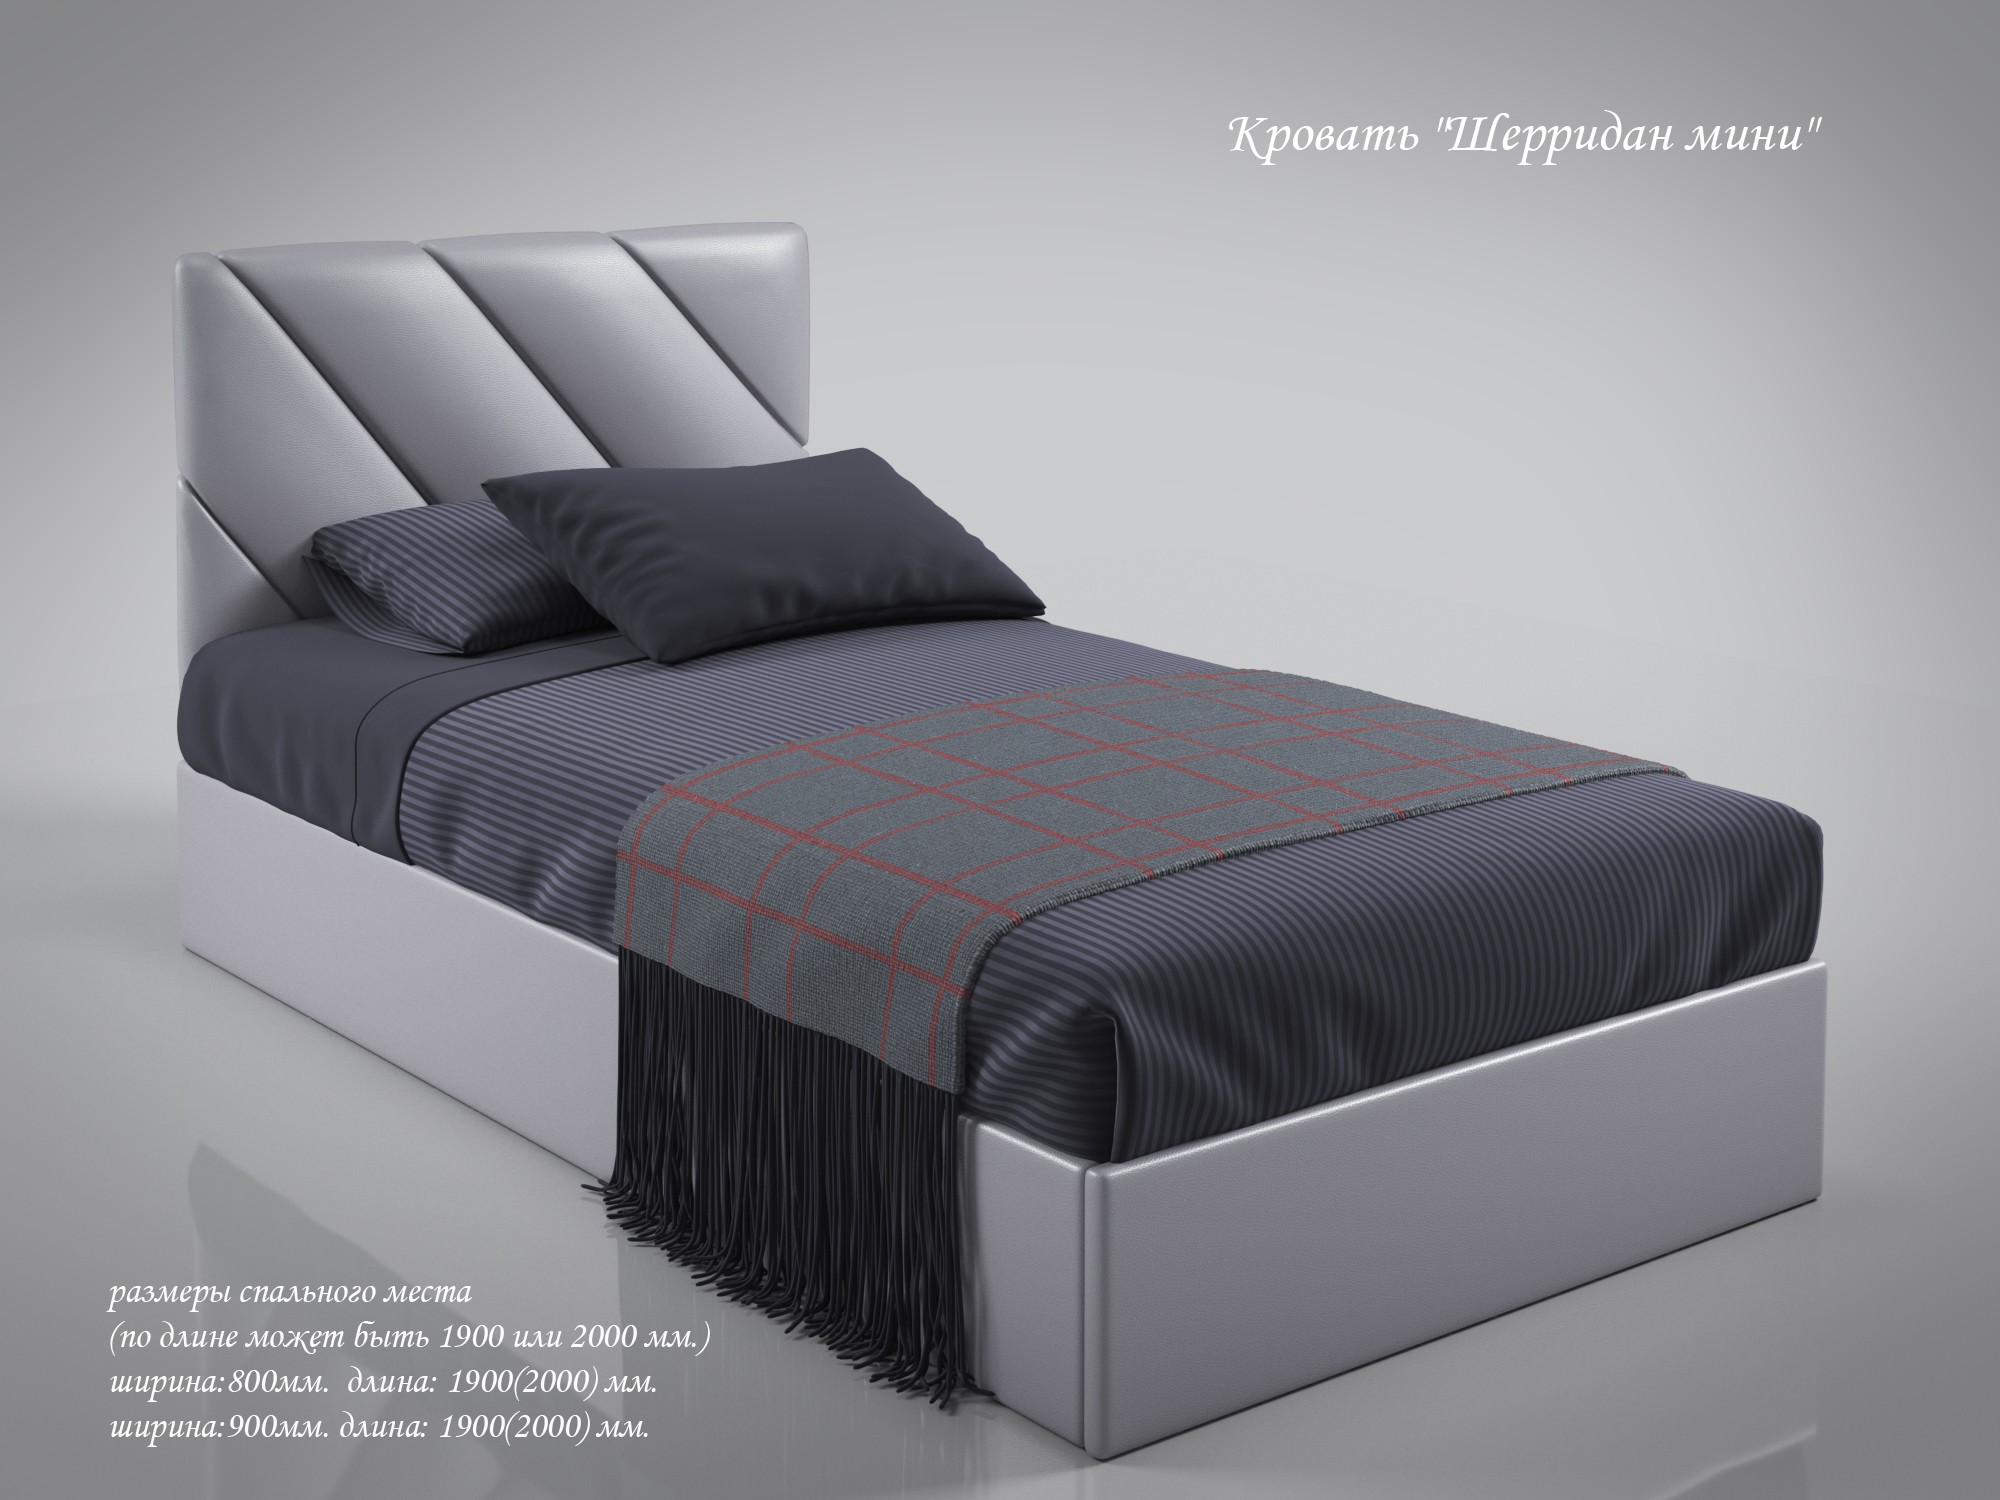 Кровать Шерридан мини 900х200(190)  с под.мех